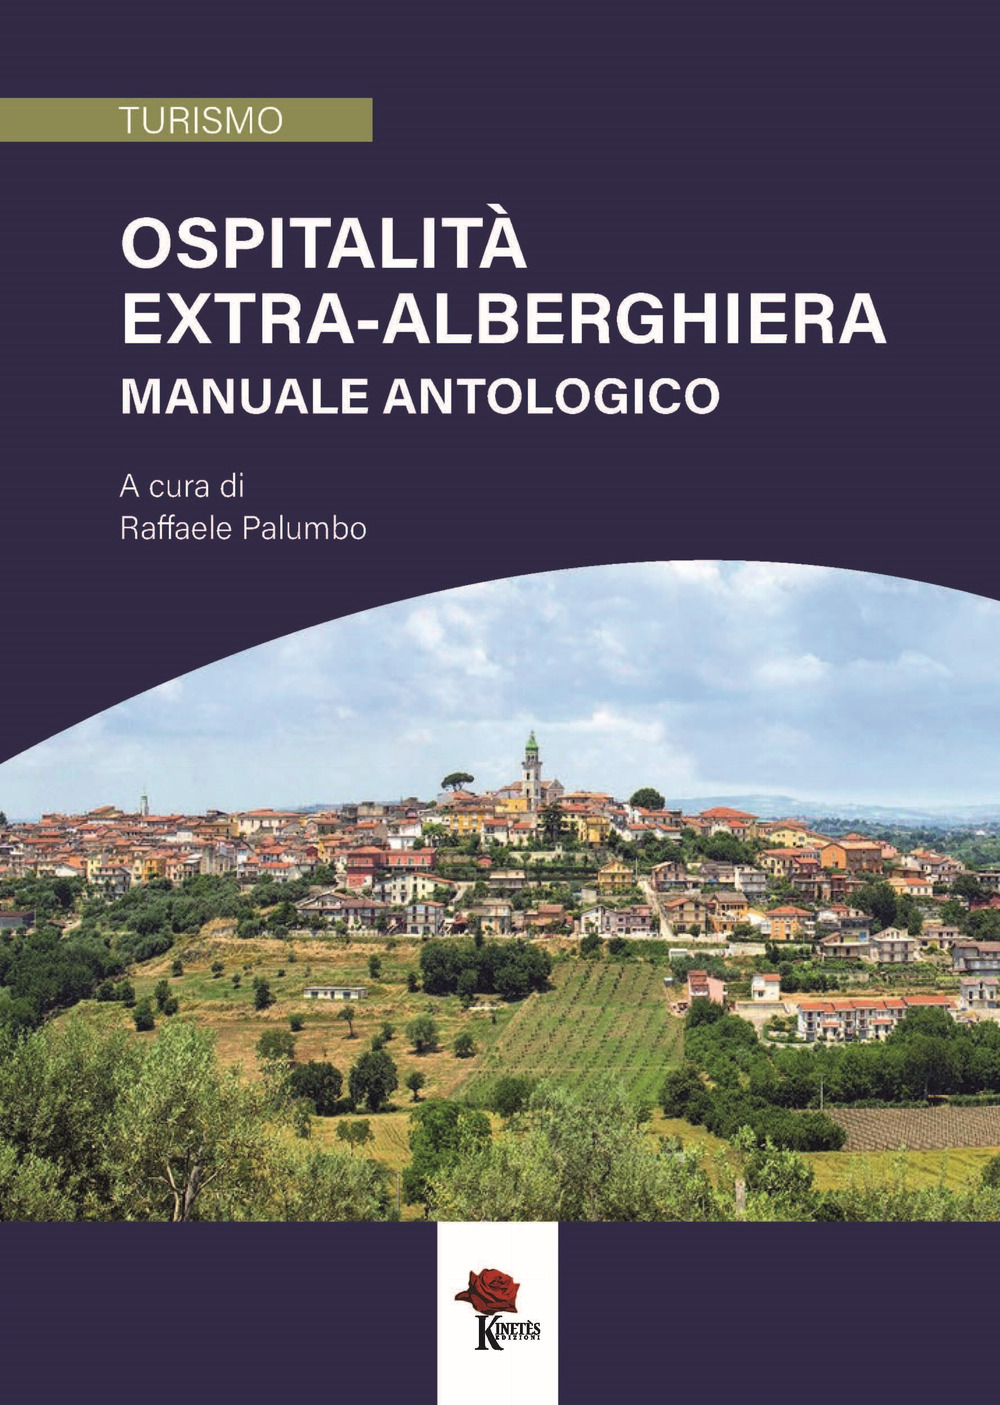 Libri Ospitalita Extra-Alberghiera. Manuale Antologico NUOVO SIGILLATO, EDIZIONE DEL 21/11/2021 SUBITO DISPONIBILE